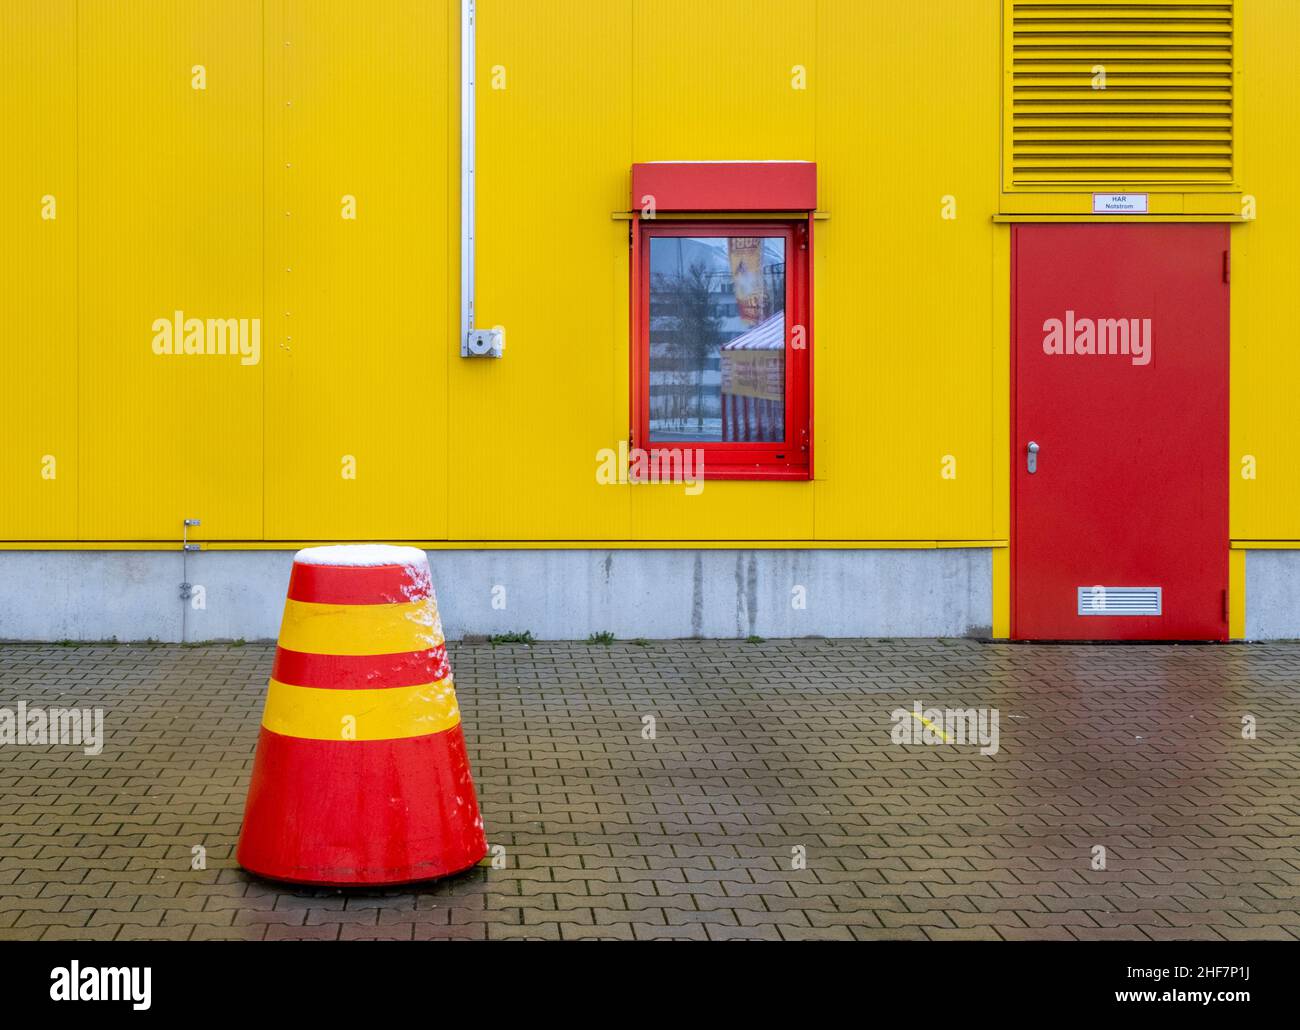 scooter rosso giallo, neve, porta rossa, magazzino giallo Foto Stock